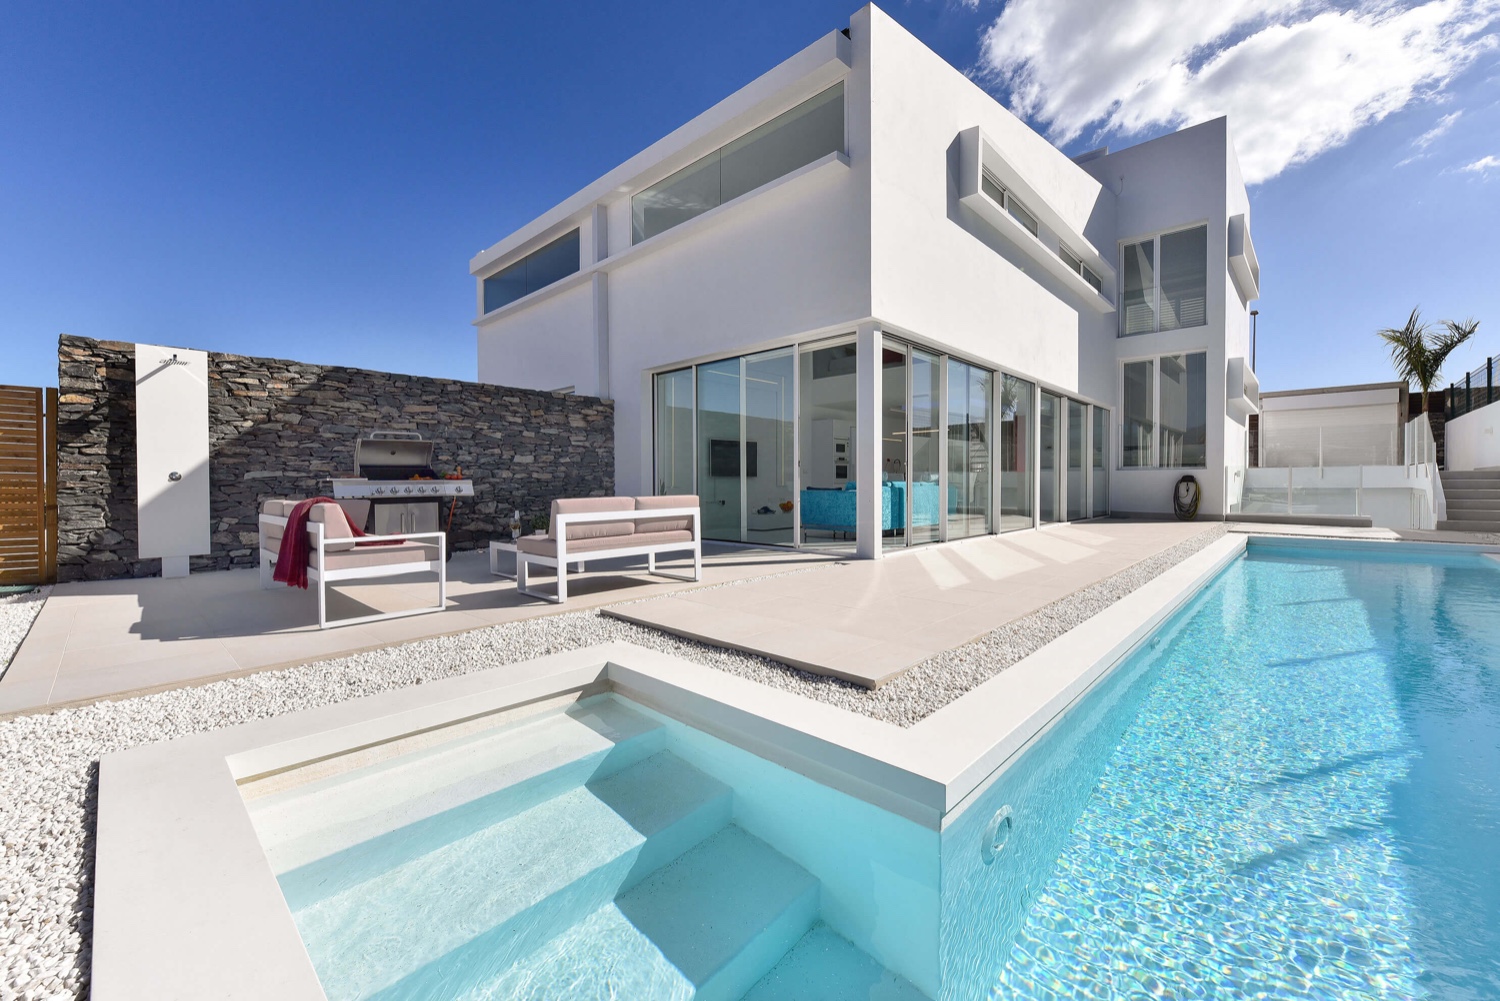 Wunderschöne moderne Villa für bis zu 8 Personen mit hochwertiger Ausstattung, großem beheiztem Pool und idealer Lage, nur wenige Minuten vom Strand von Meloneras und Maspalomas entfernt